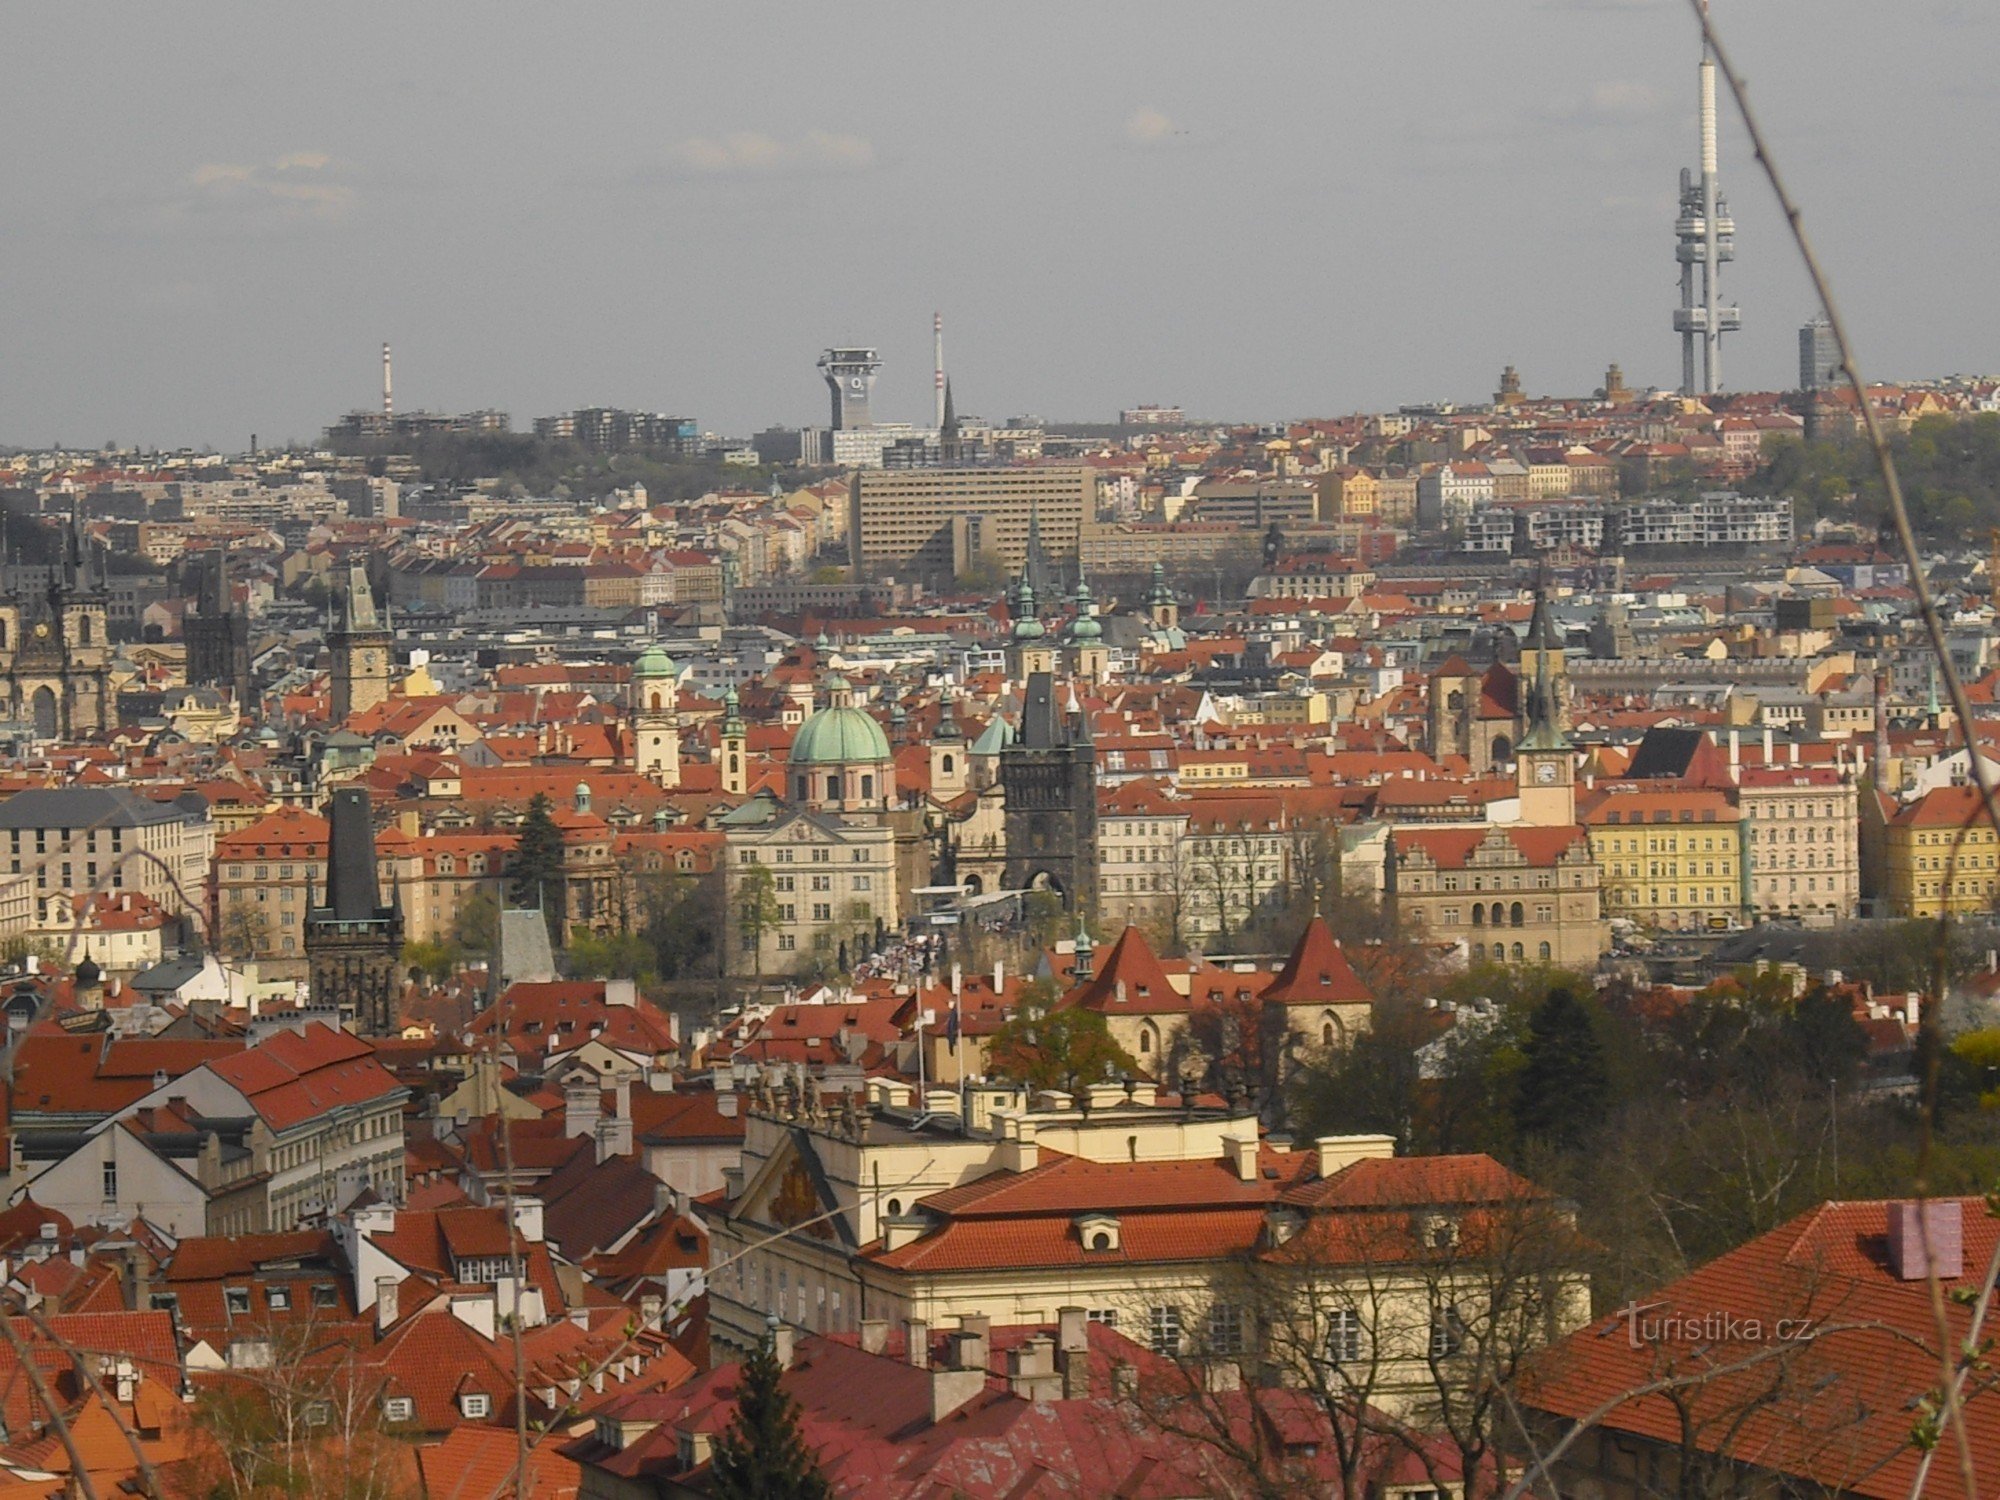 Capitala Praga